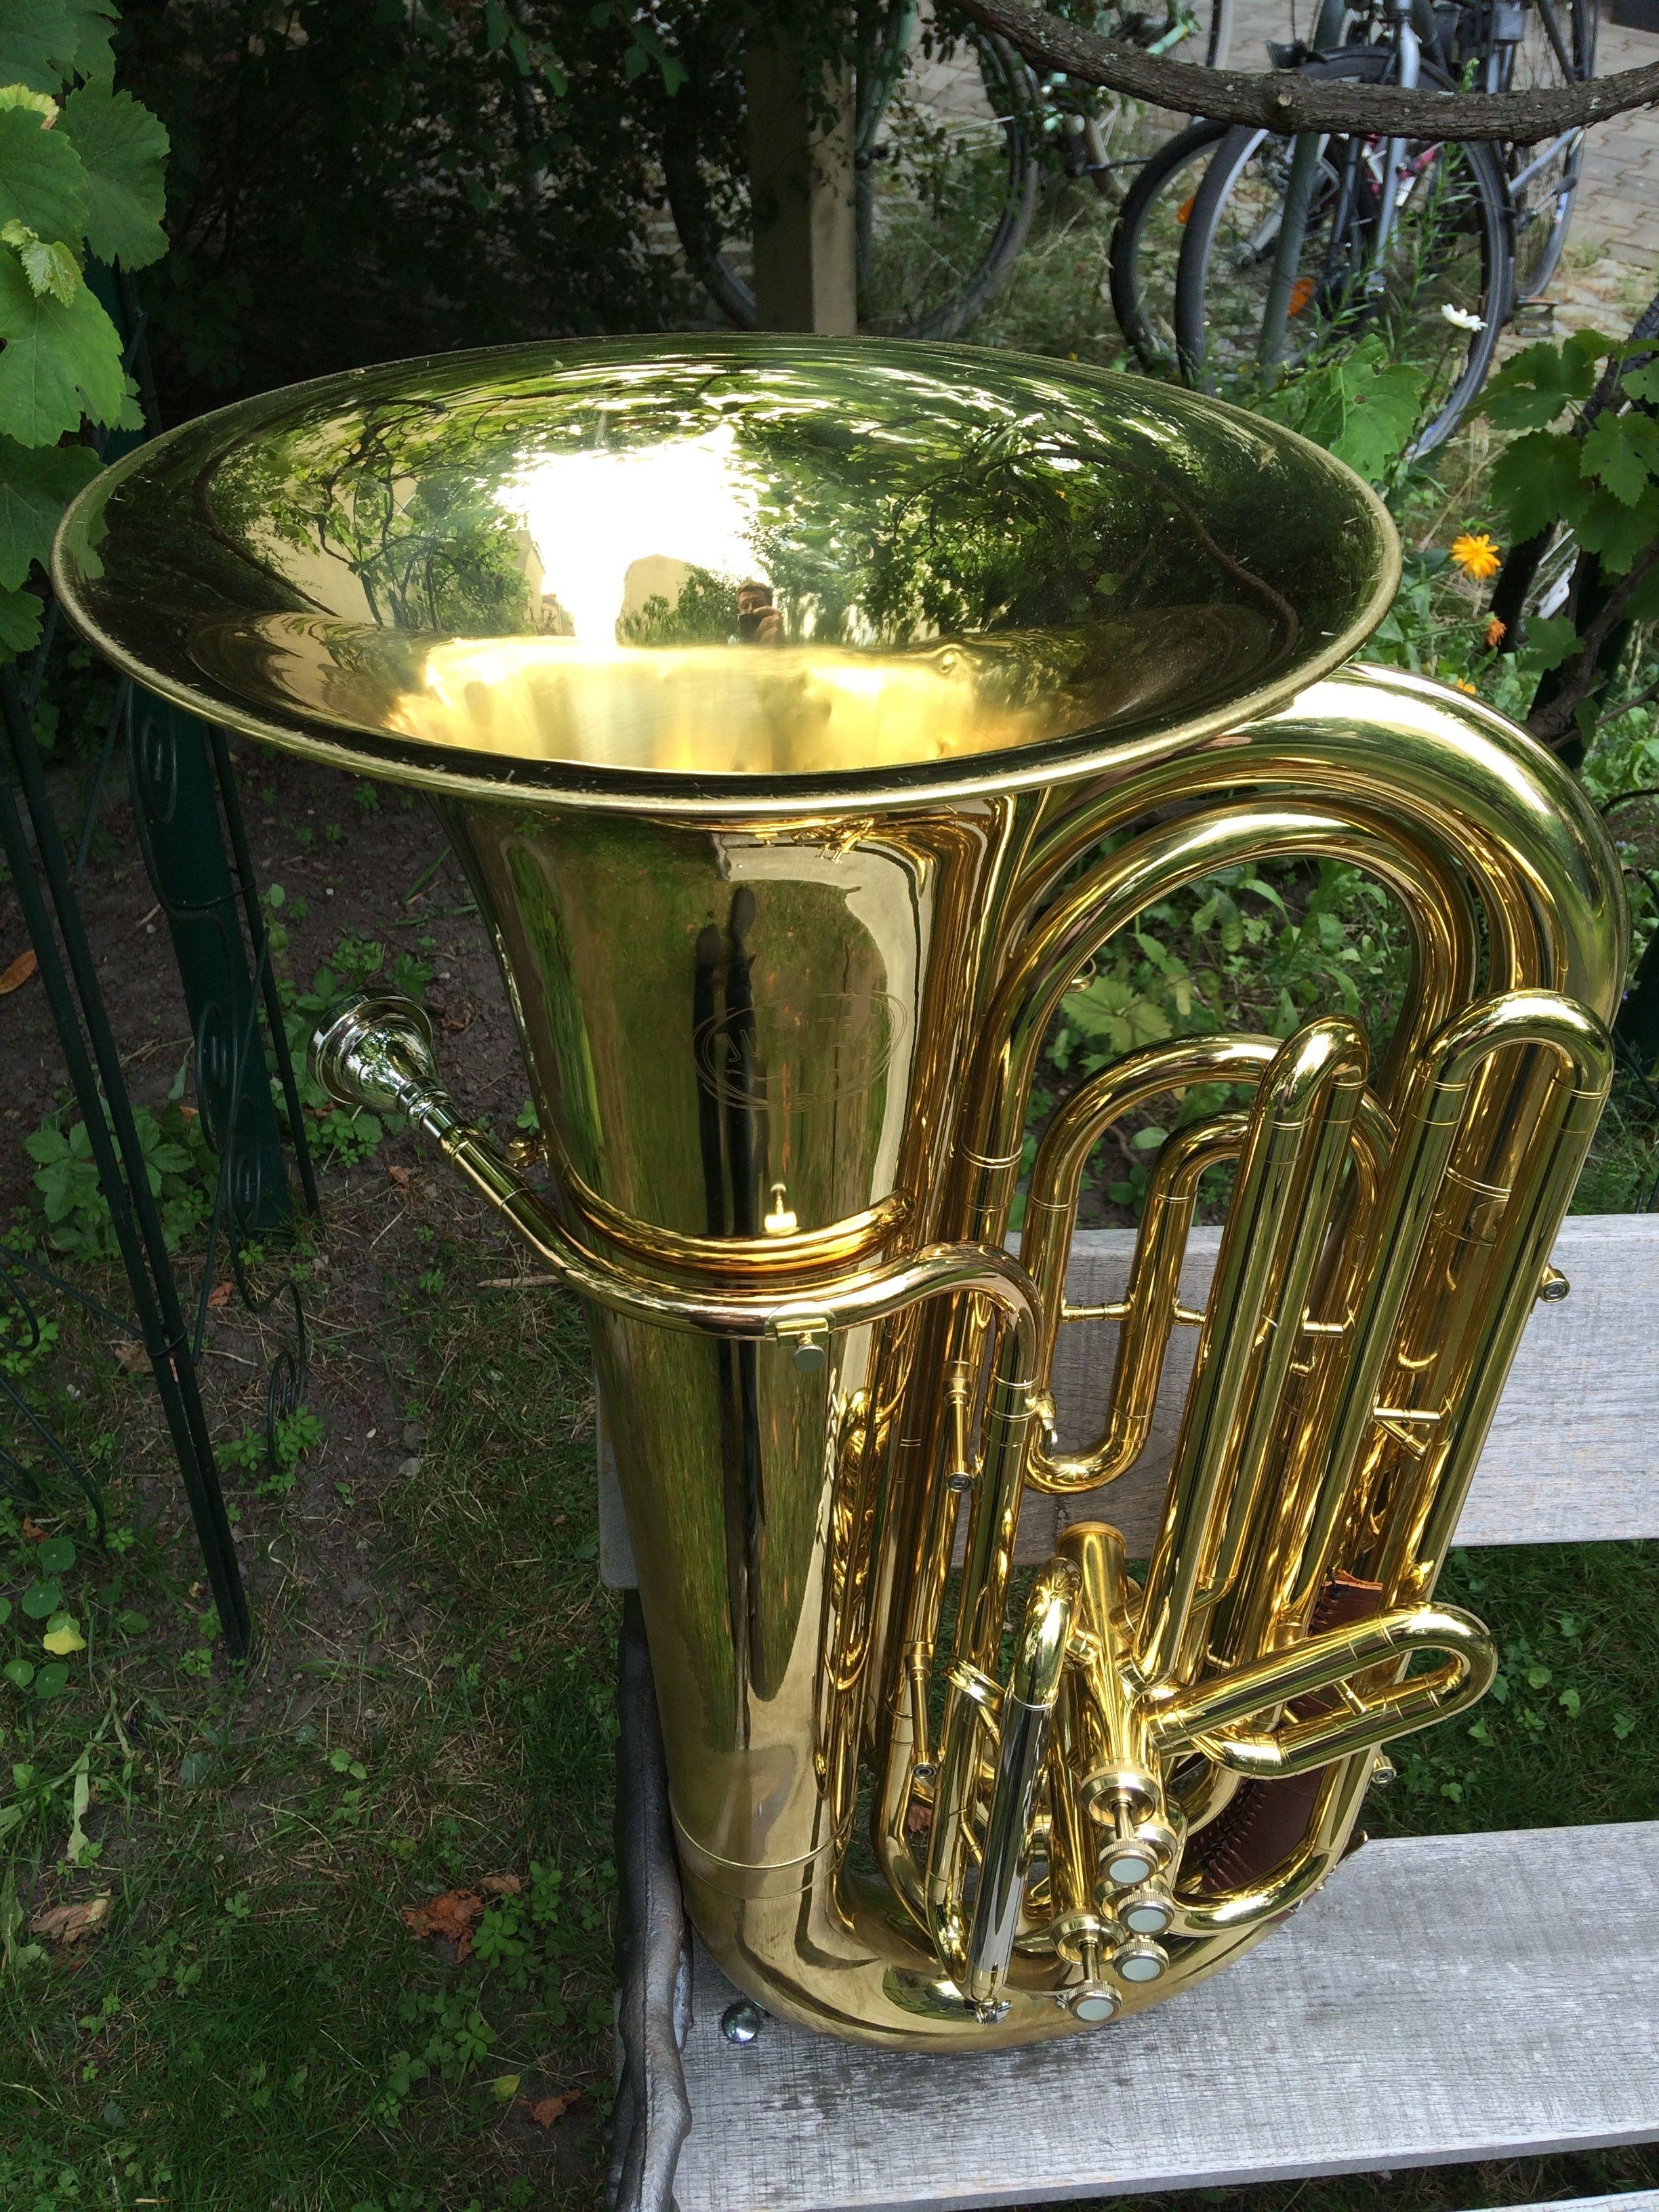 royalty free tuba image, minimum size:2k